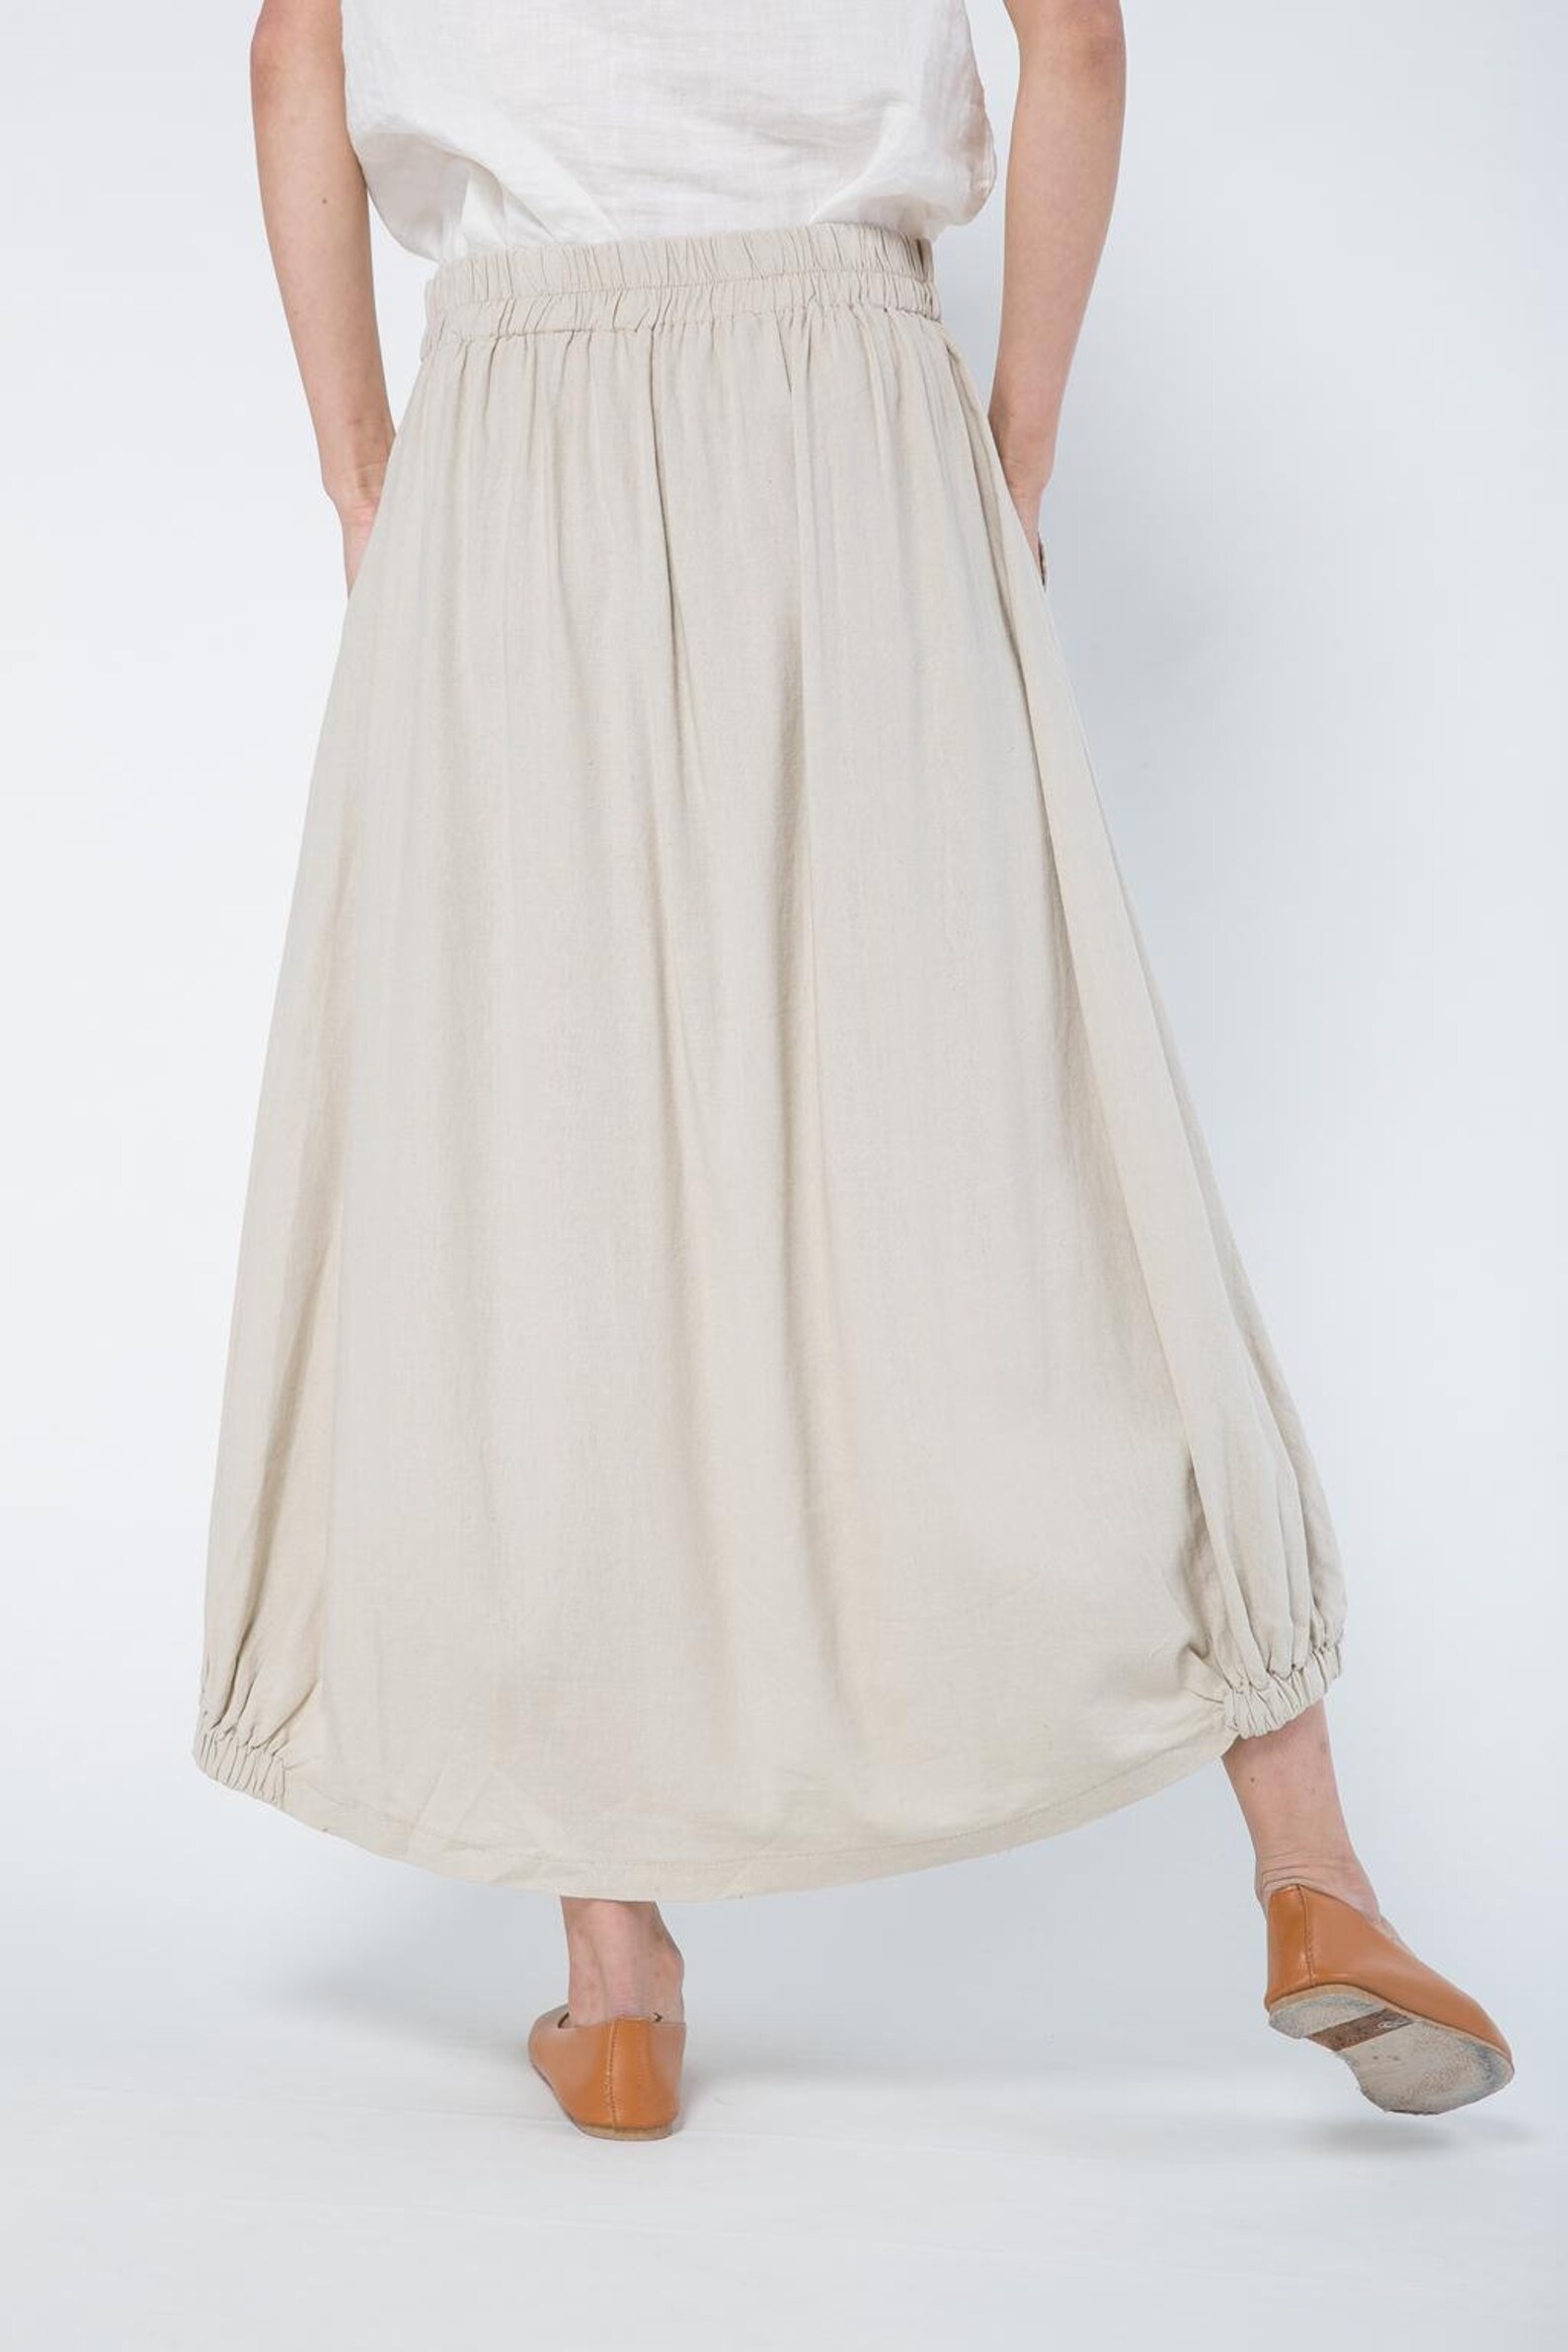 Linen skirt beige linen skirts long linen skirt linen | Etsy